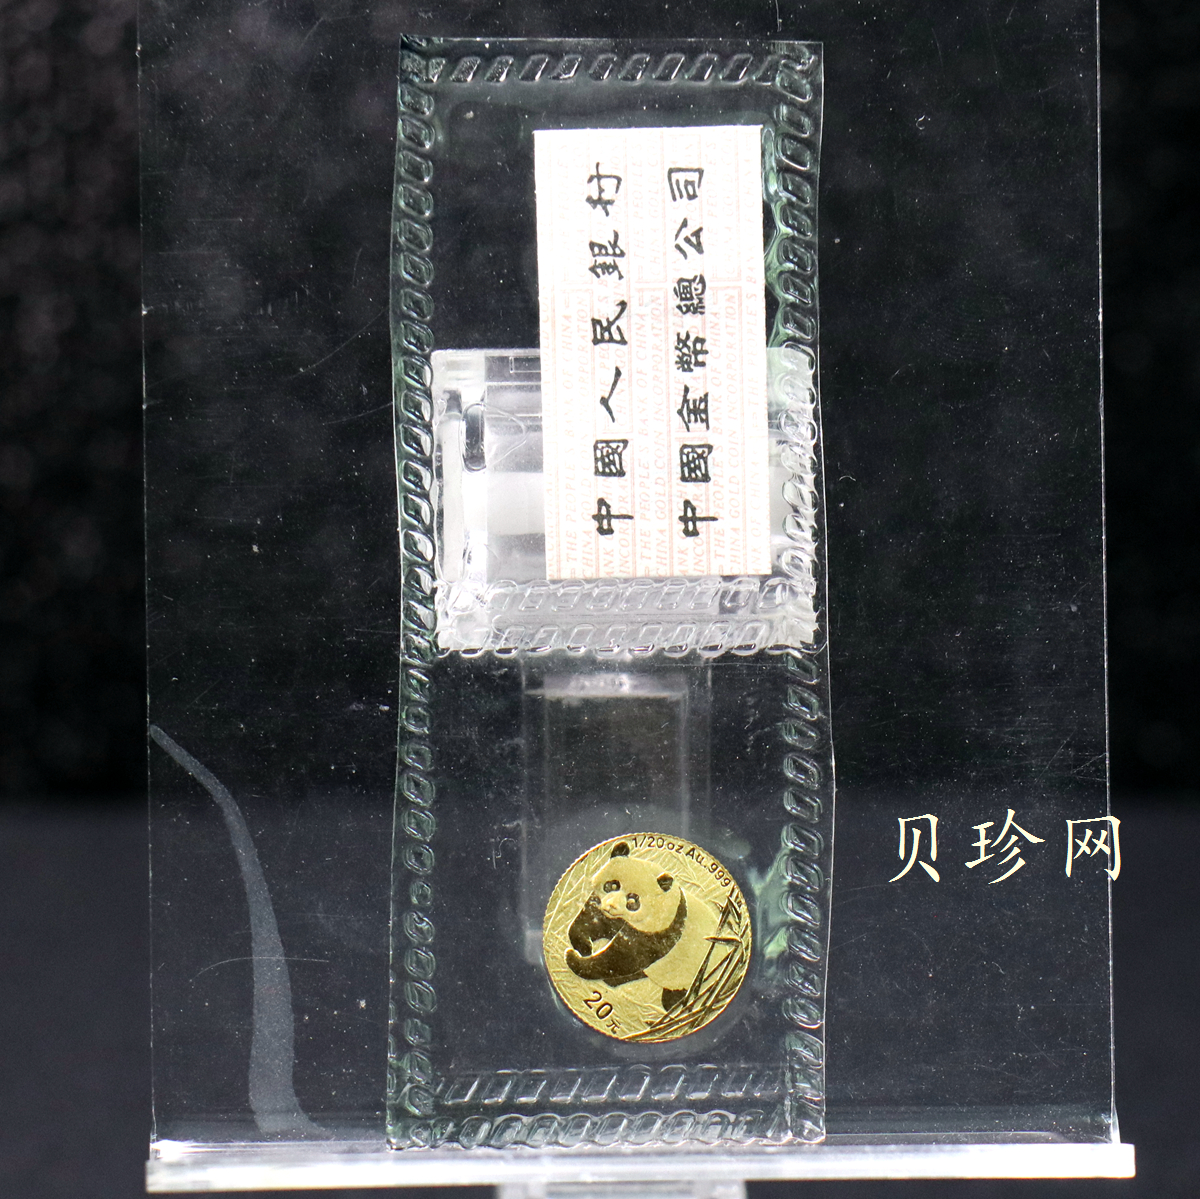 【010105】2001版熊猫金银纪念币1/20盎司普制金币